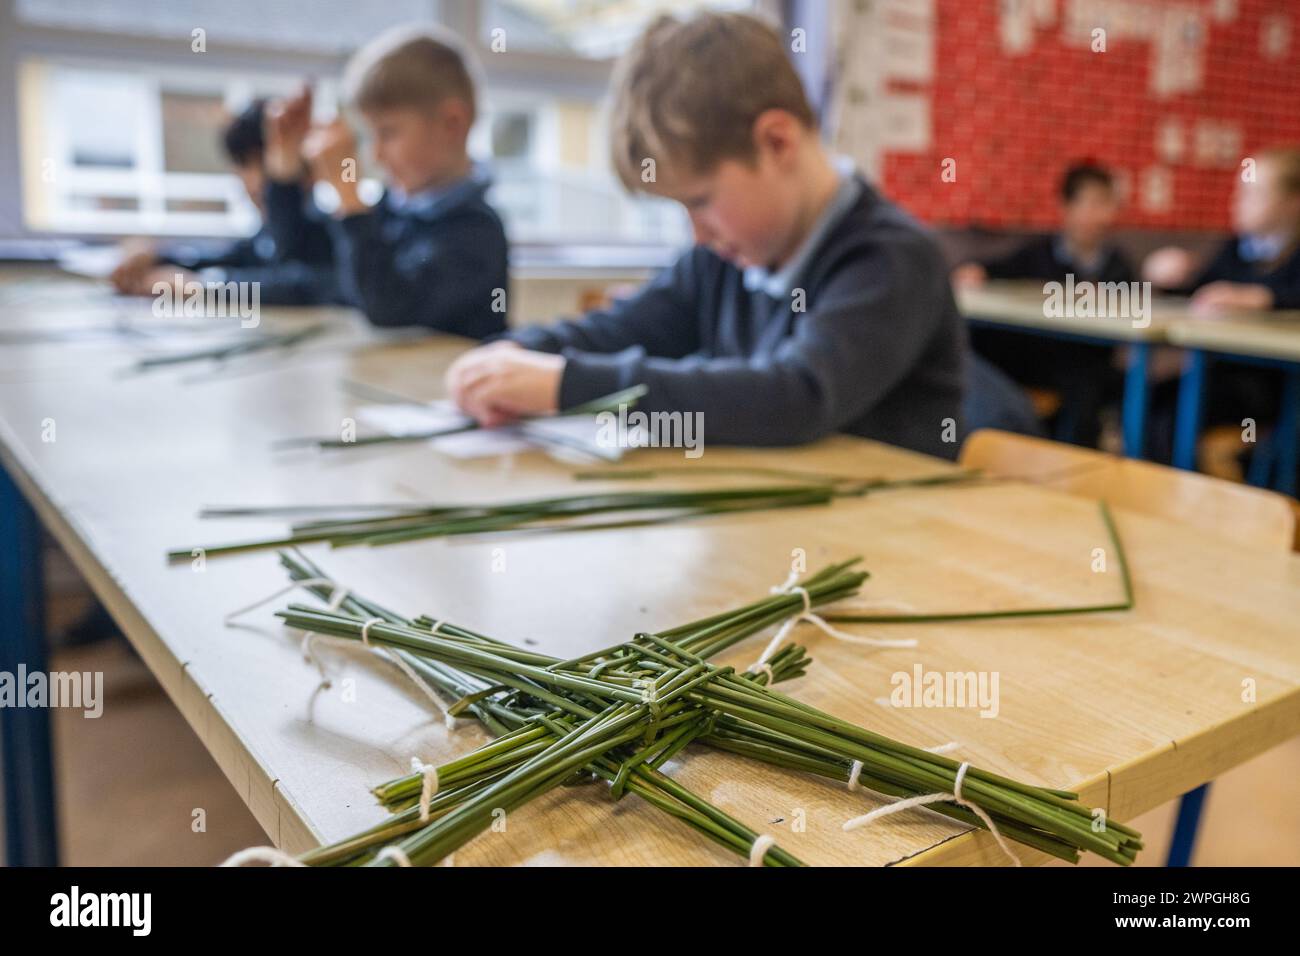 Irish 2nd class pupils making St. Brigid crosses in Ireland. Stock Photo